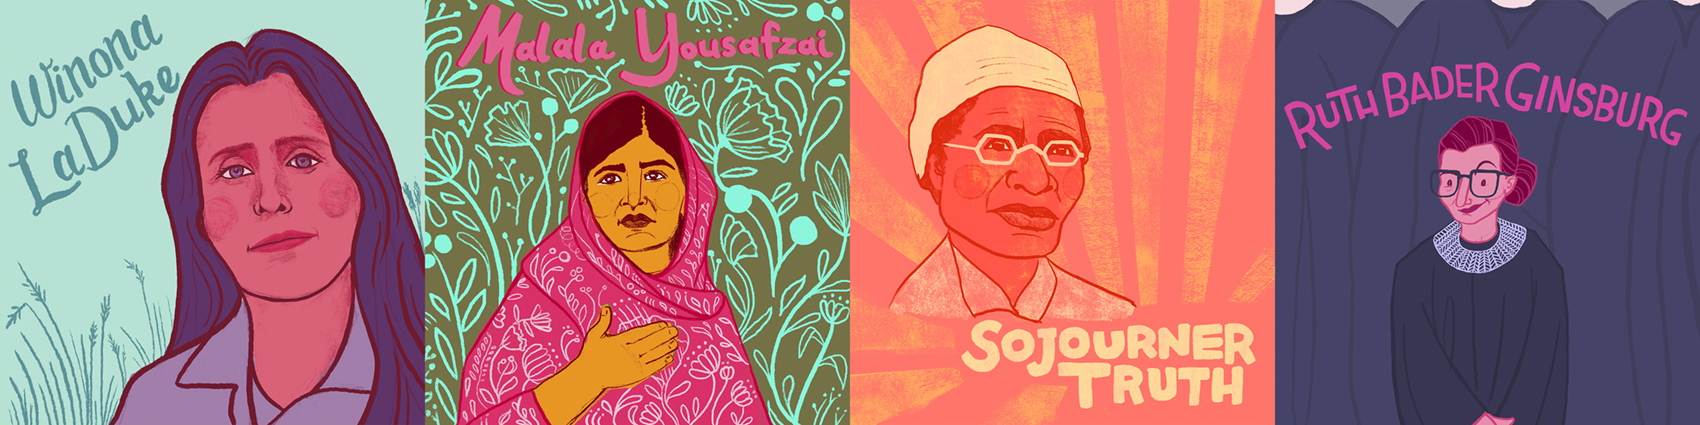 Illustrated portraits of Winona LaDuke, Malala Yousafzai, Sojurner Truth, and Ruth Bader Ginsburg